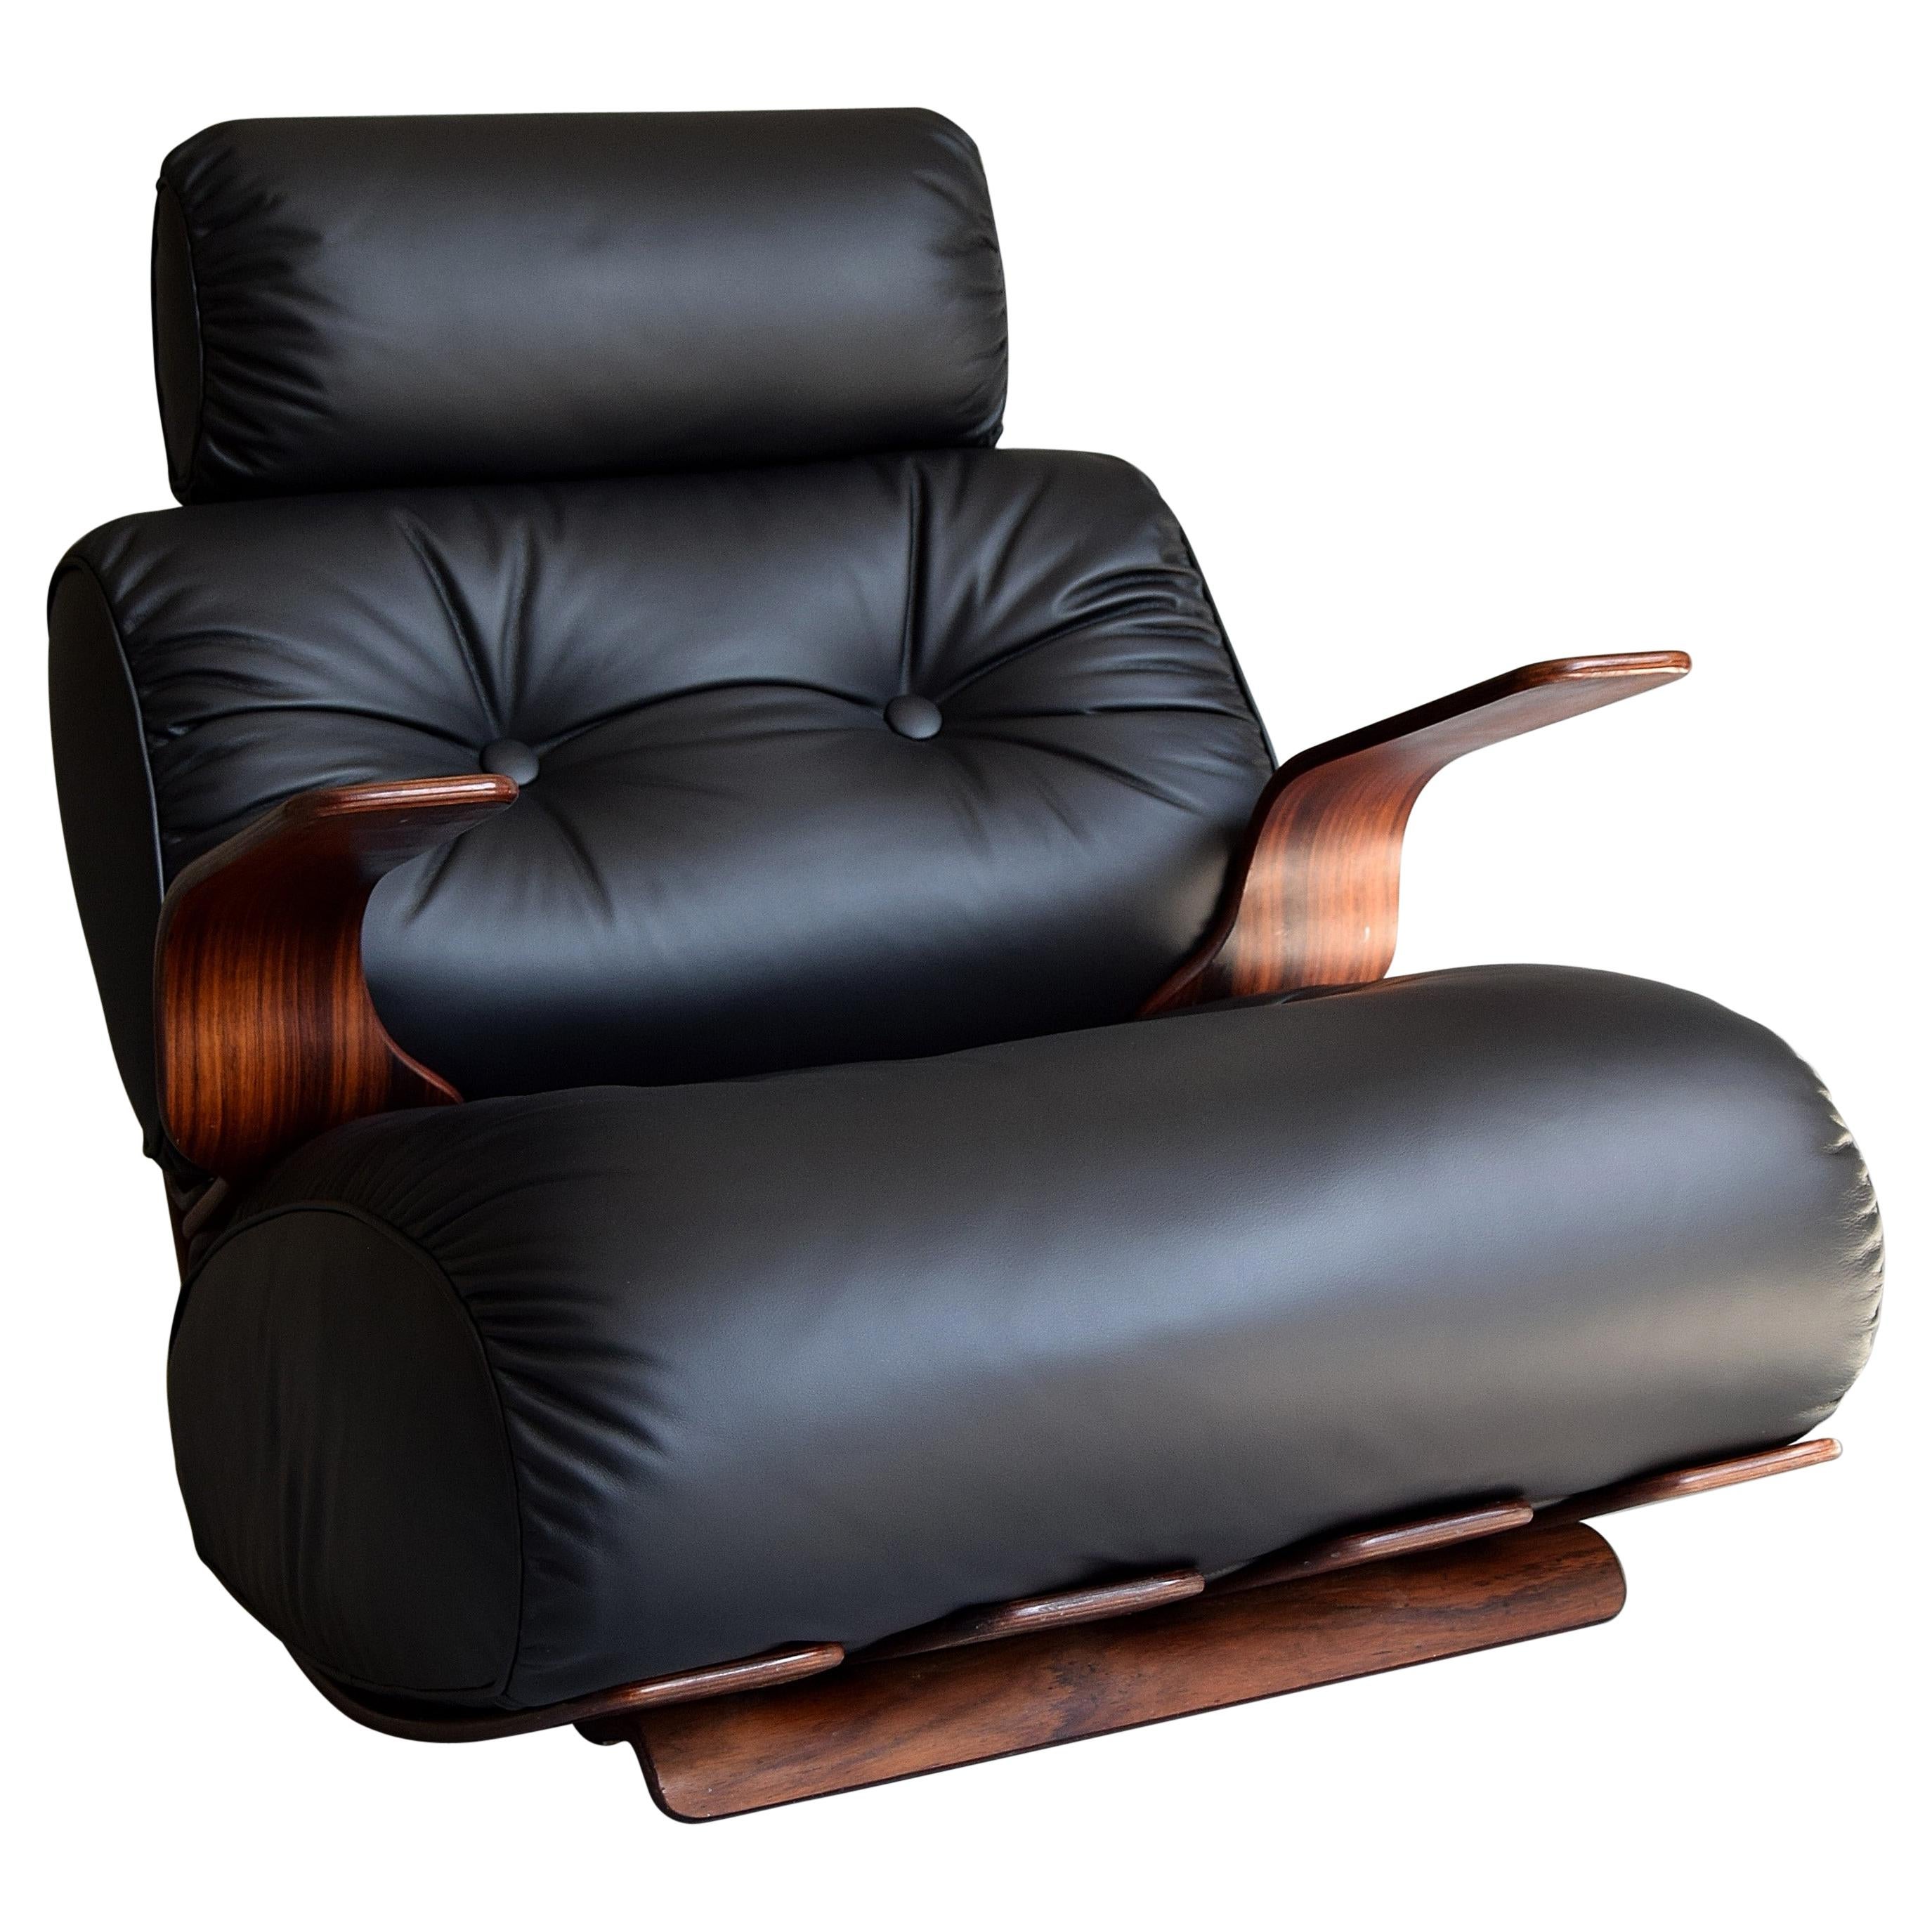 Stilvoller und äußerst bequemer Lounge-/Schaukelstuhl aus den 1970er Jahren. Der Stuhl hat einen raffinierten, gebogenen Sperrholzrahmen mit einem tief und warm gemaserten Palisanderfurnier.
Die neuen, mit hochwertigem, weichem, schwarzem Leder